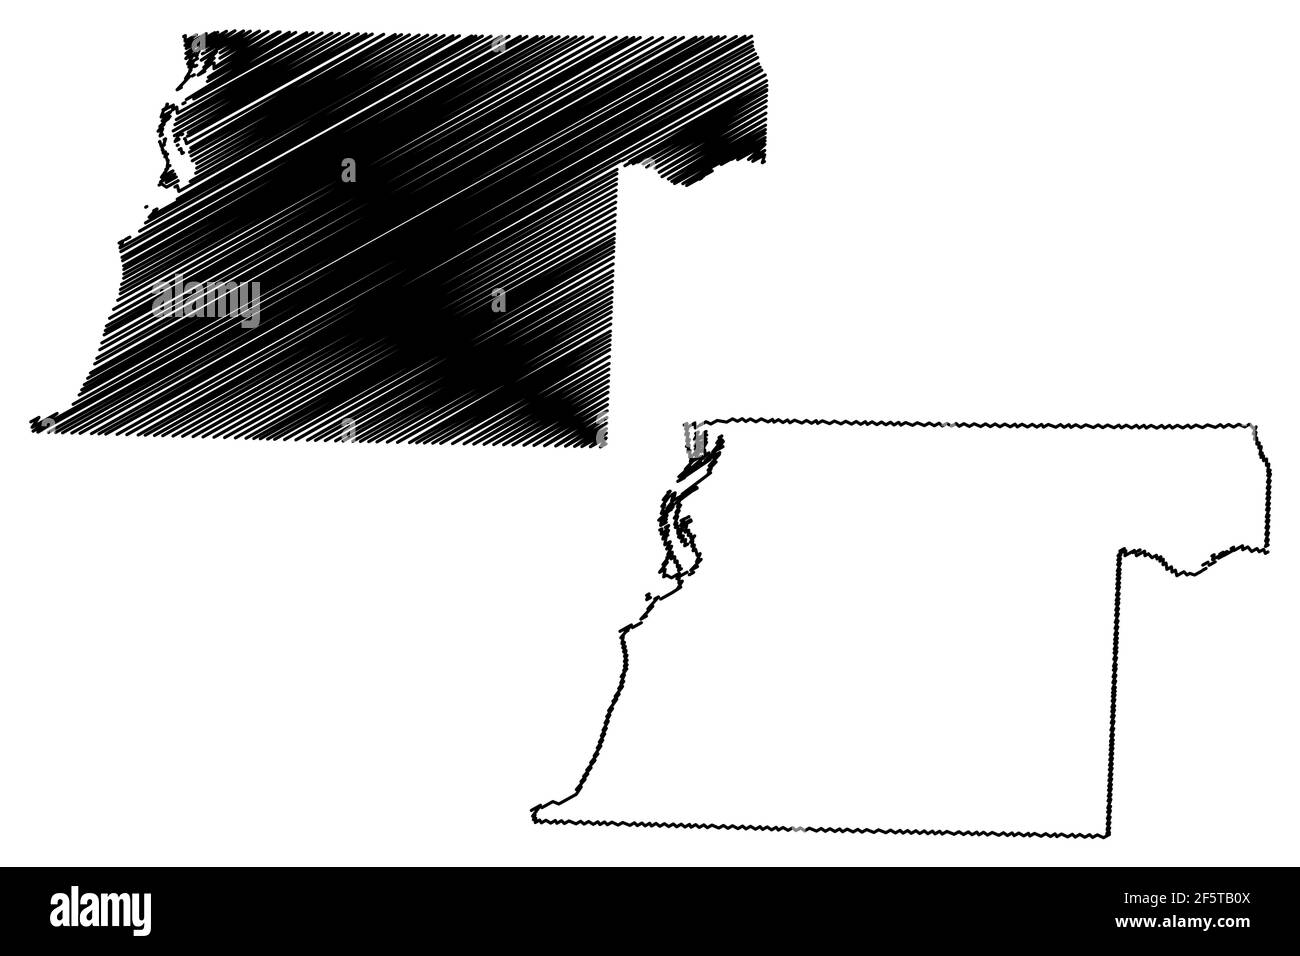 Illustrazione vettoriale della contea di Obion, stato del Tennessee (Stati Uniti, Stati Uniti d'America, Stati Uniti, Stati Uniti), schizzo della mappa di Obion Illustrazione Vettoriale